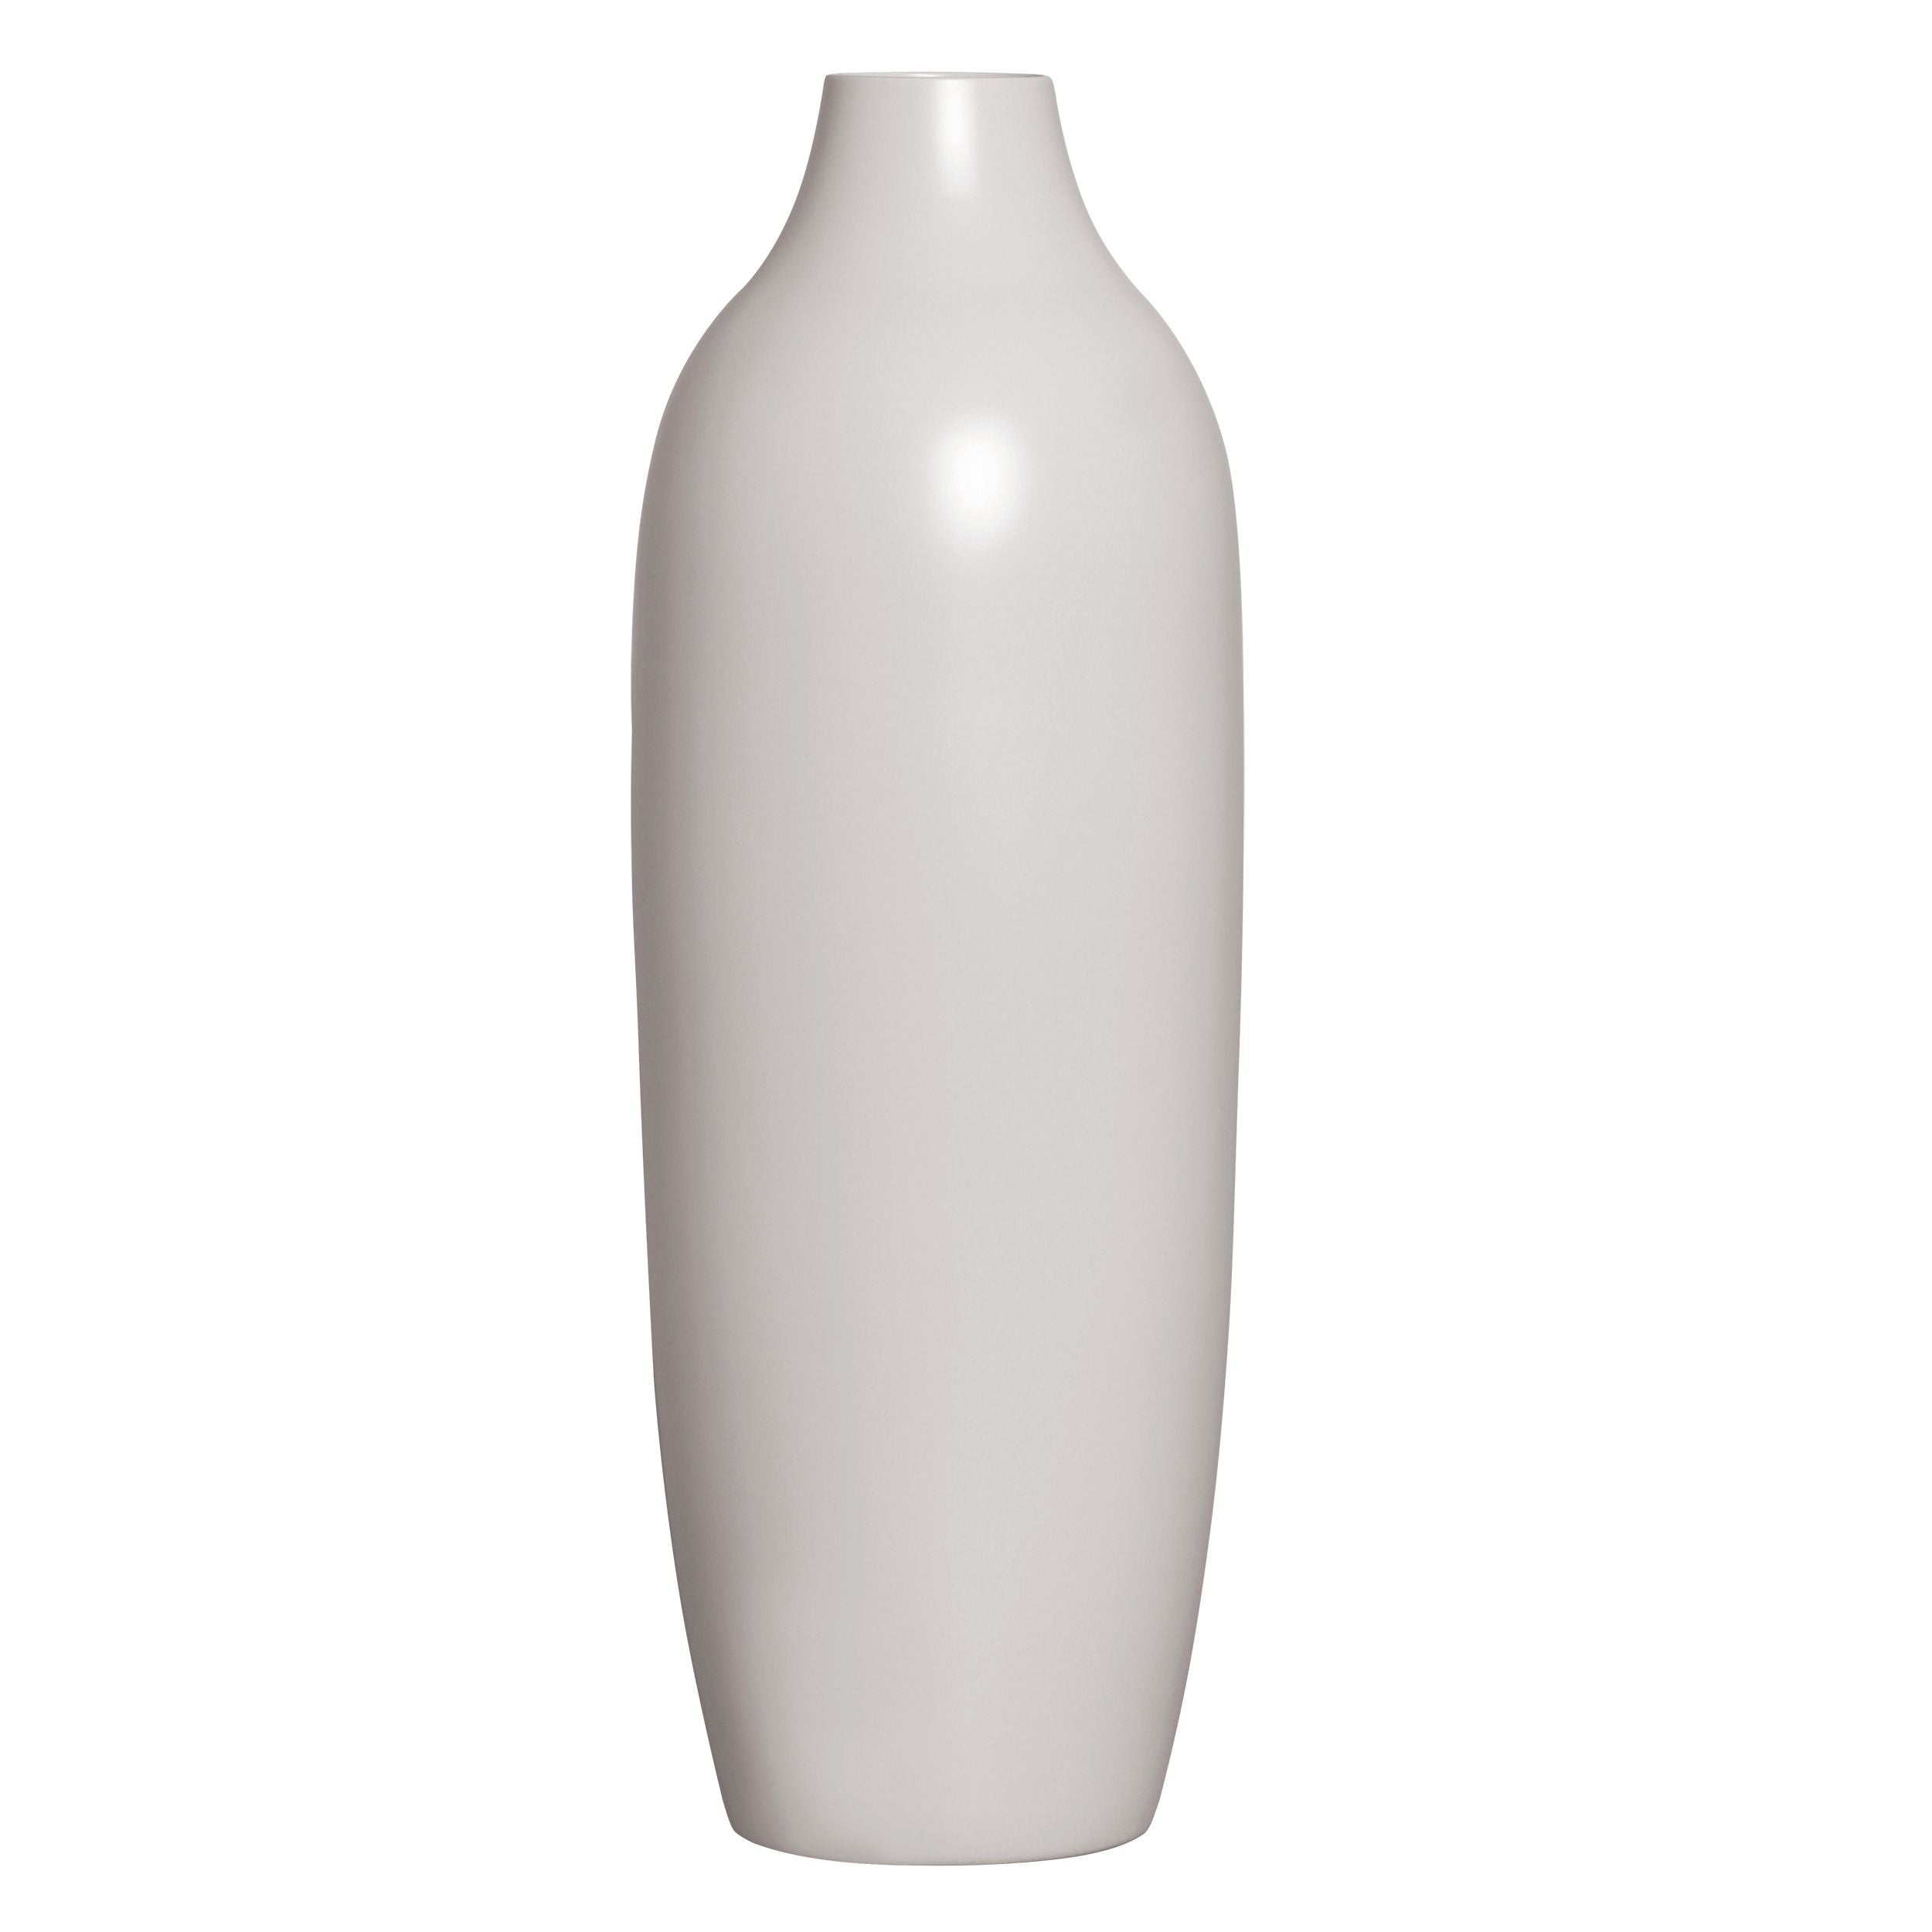 Vaso de Cerâmica Carmelo - 20x69cm